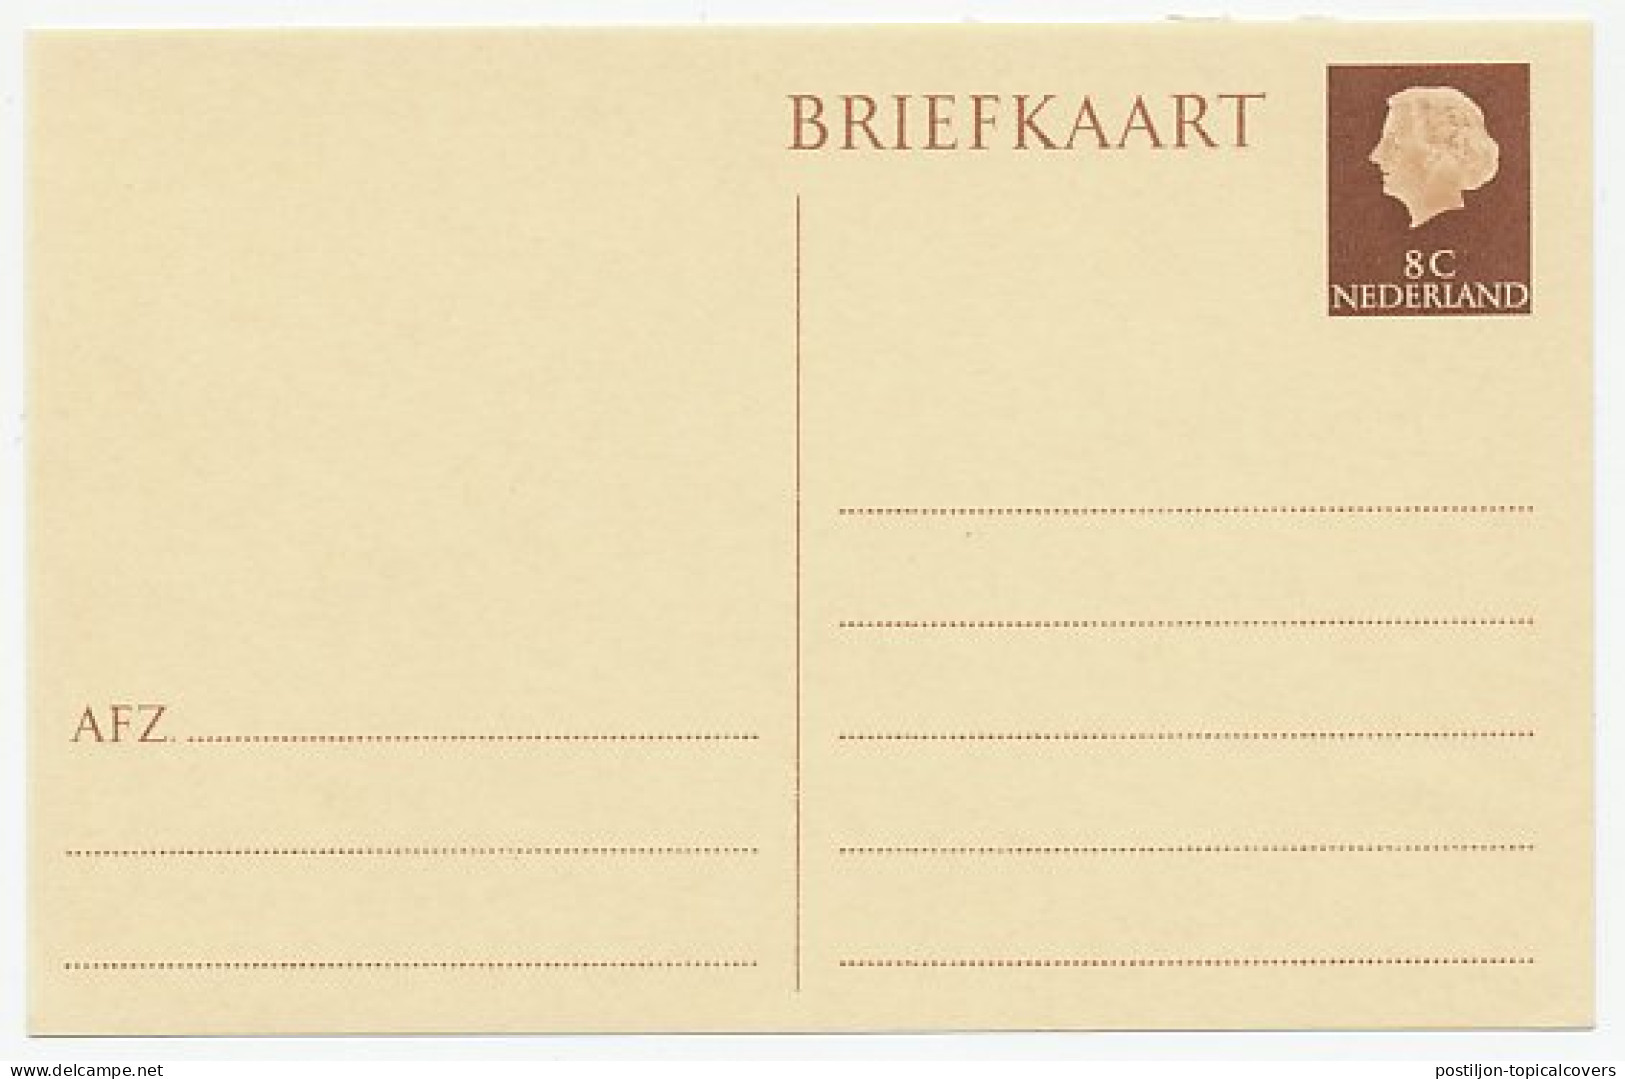 Briefkaart G. 325 - Entiers Postaux